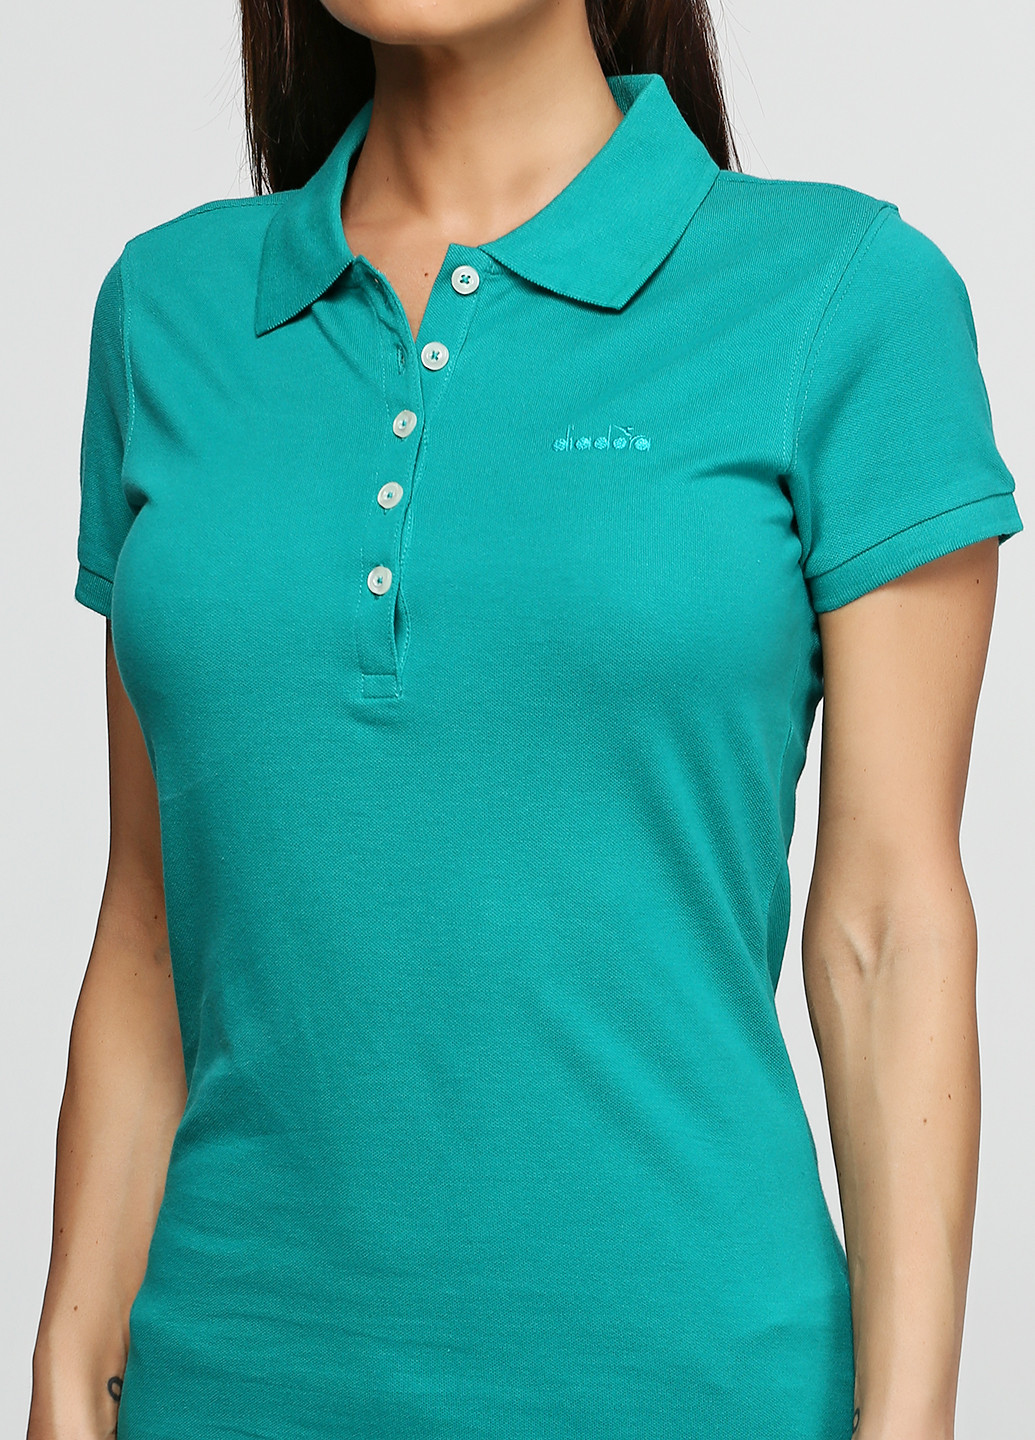 Зеленая женская футболка-поло Diadora однотонная